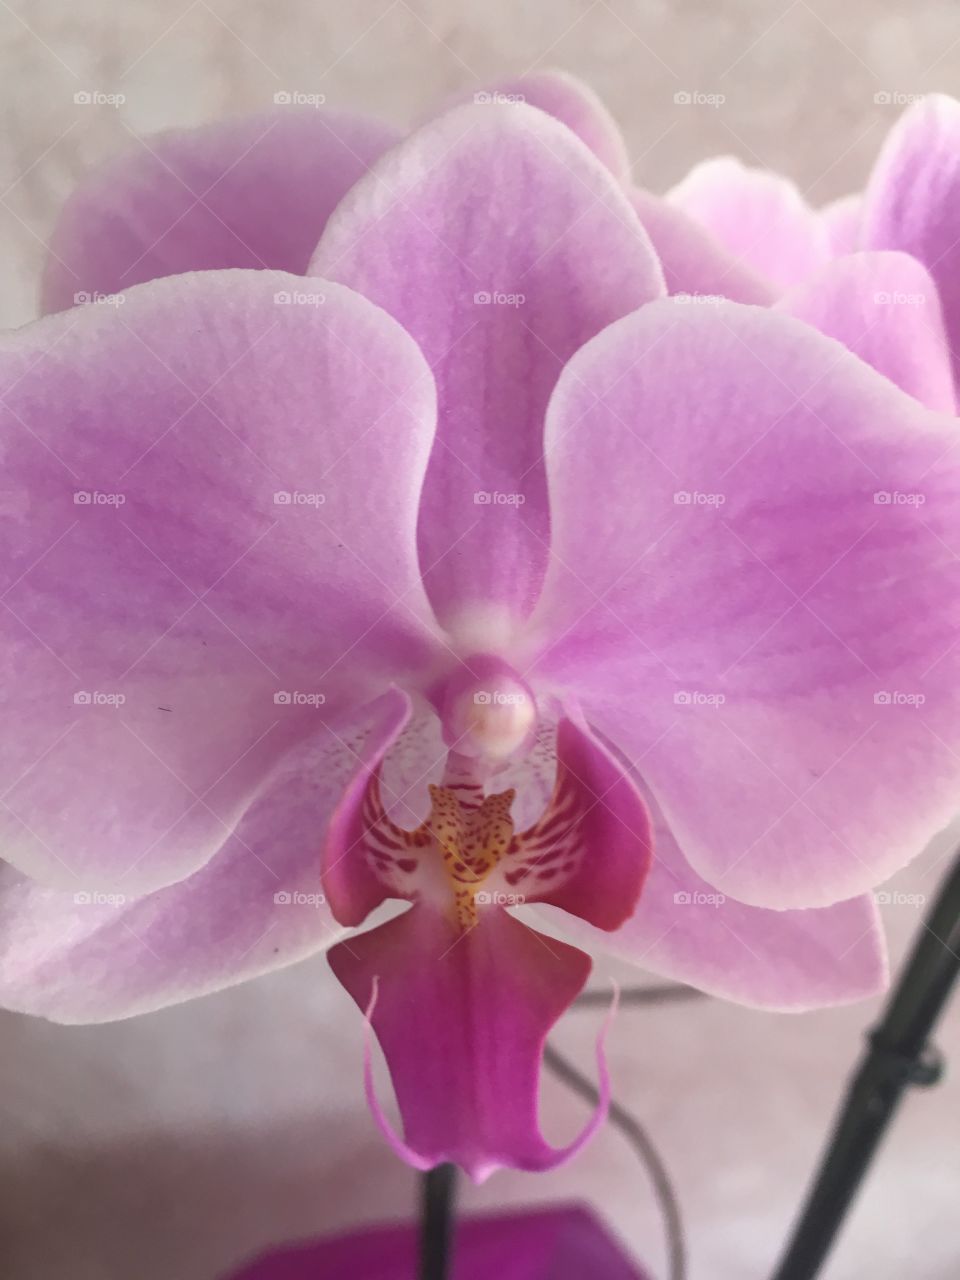 Orquídeas roxas maravilhosas que conseguimos!